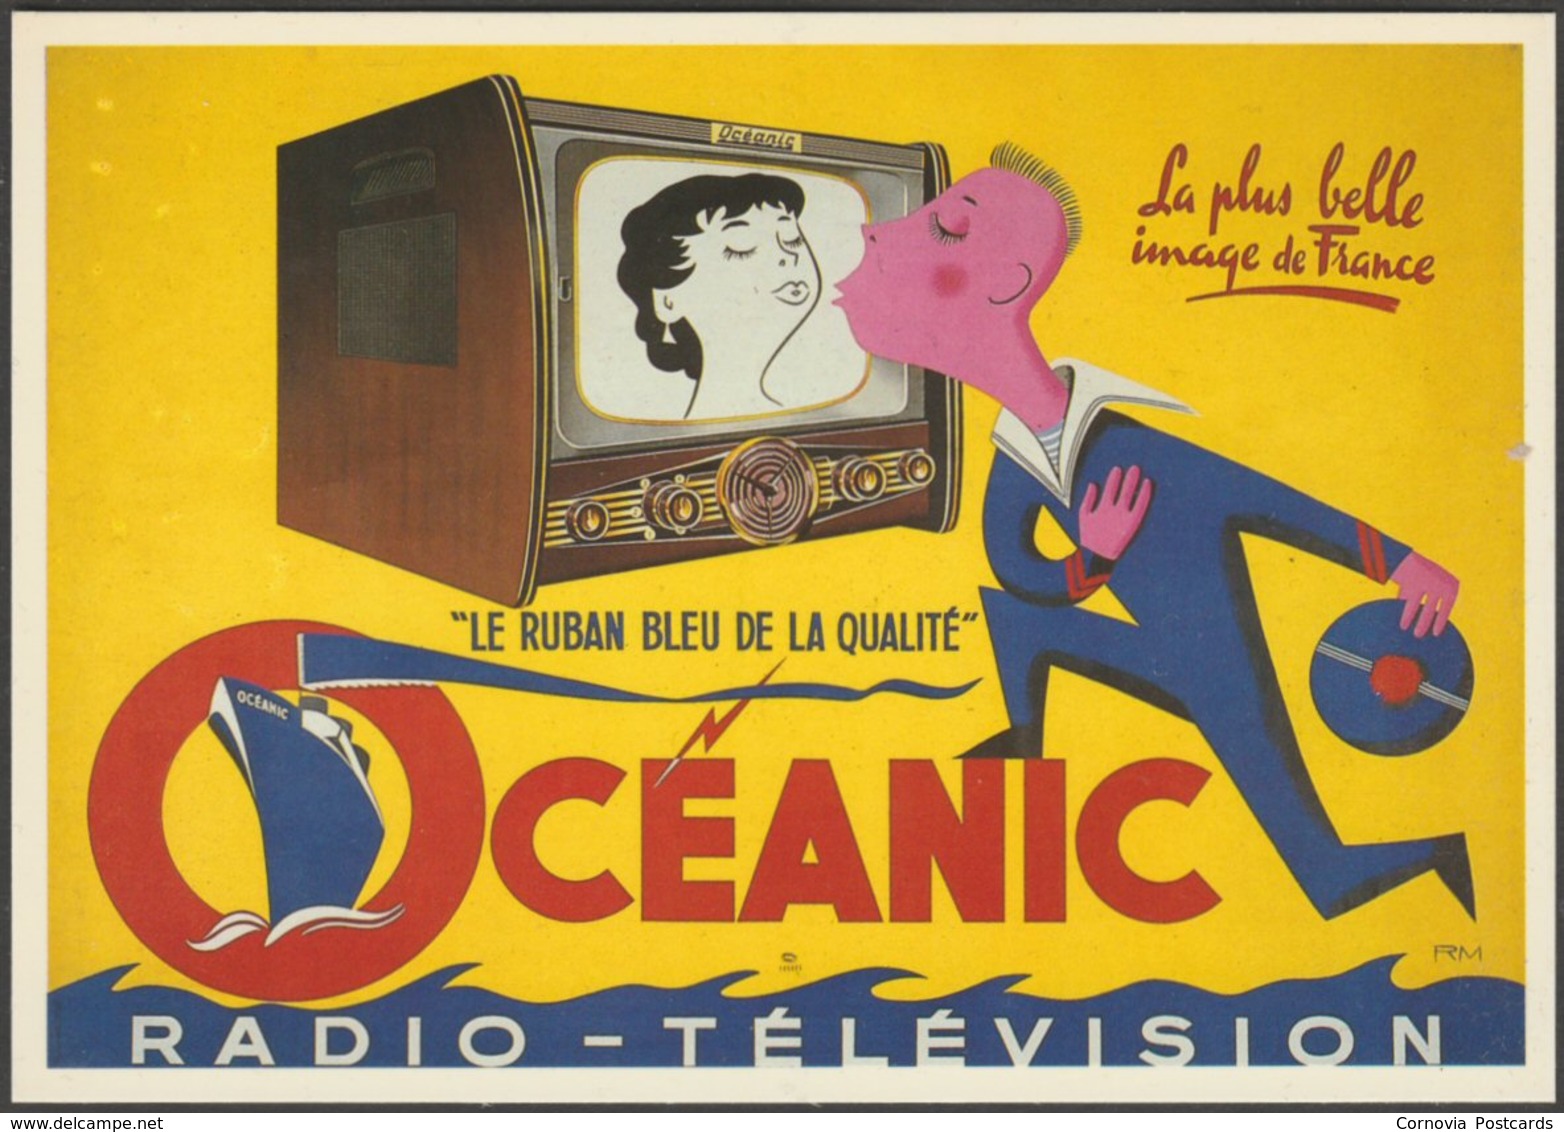 Publicité - Oceanic Radio-Télévision, C.1990 - Nugeron CPM - Advertising